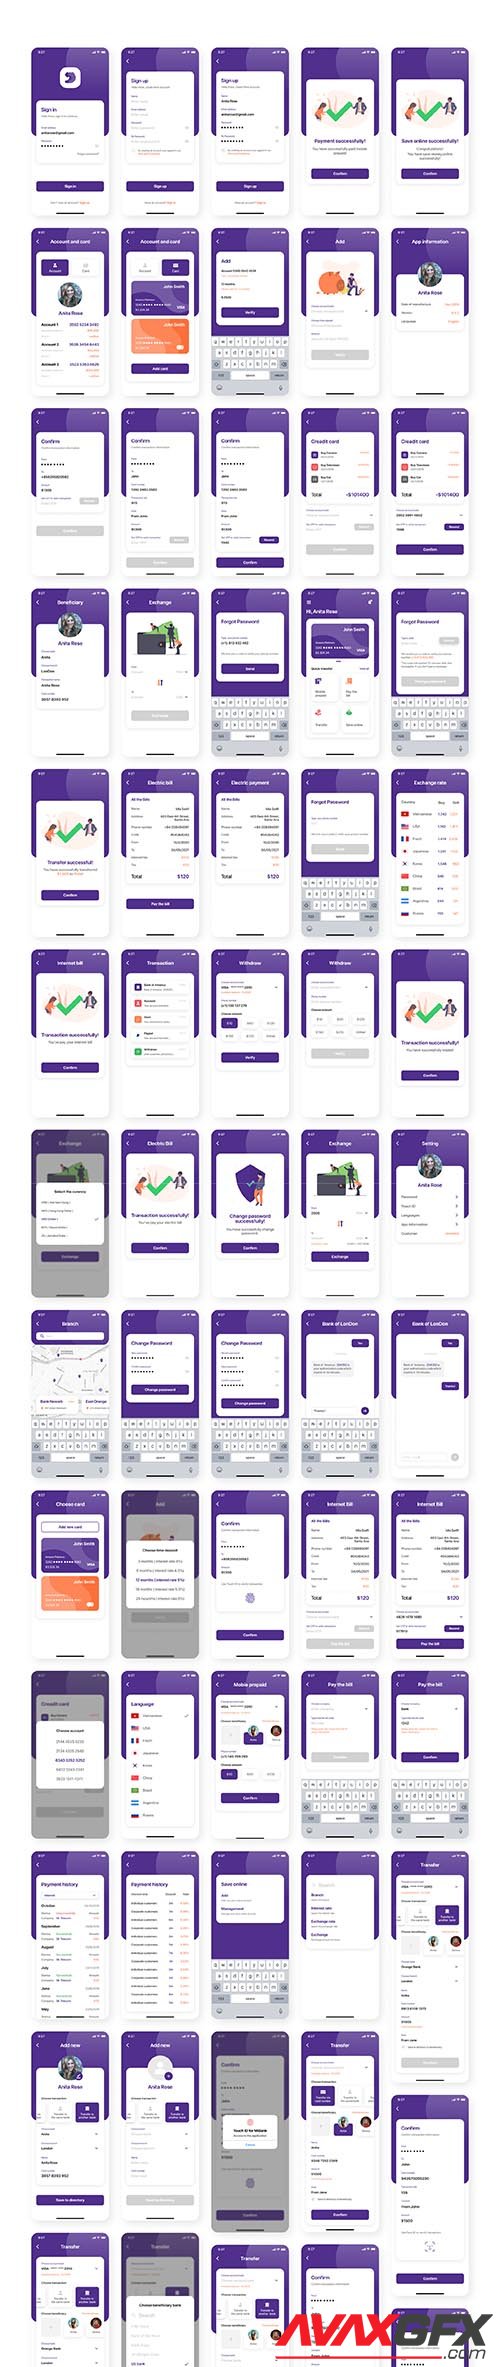 Miwal - Banking App UI Kit